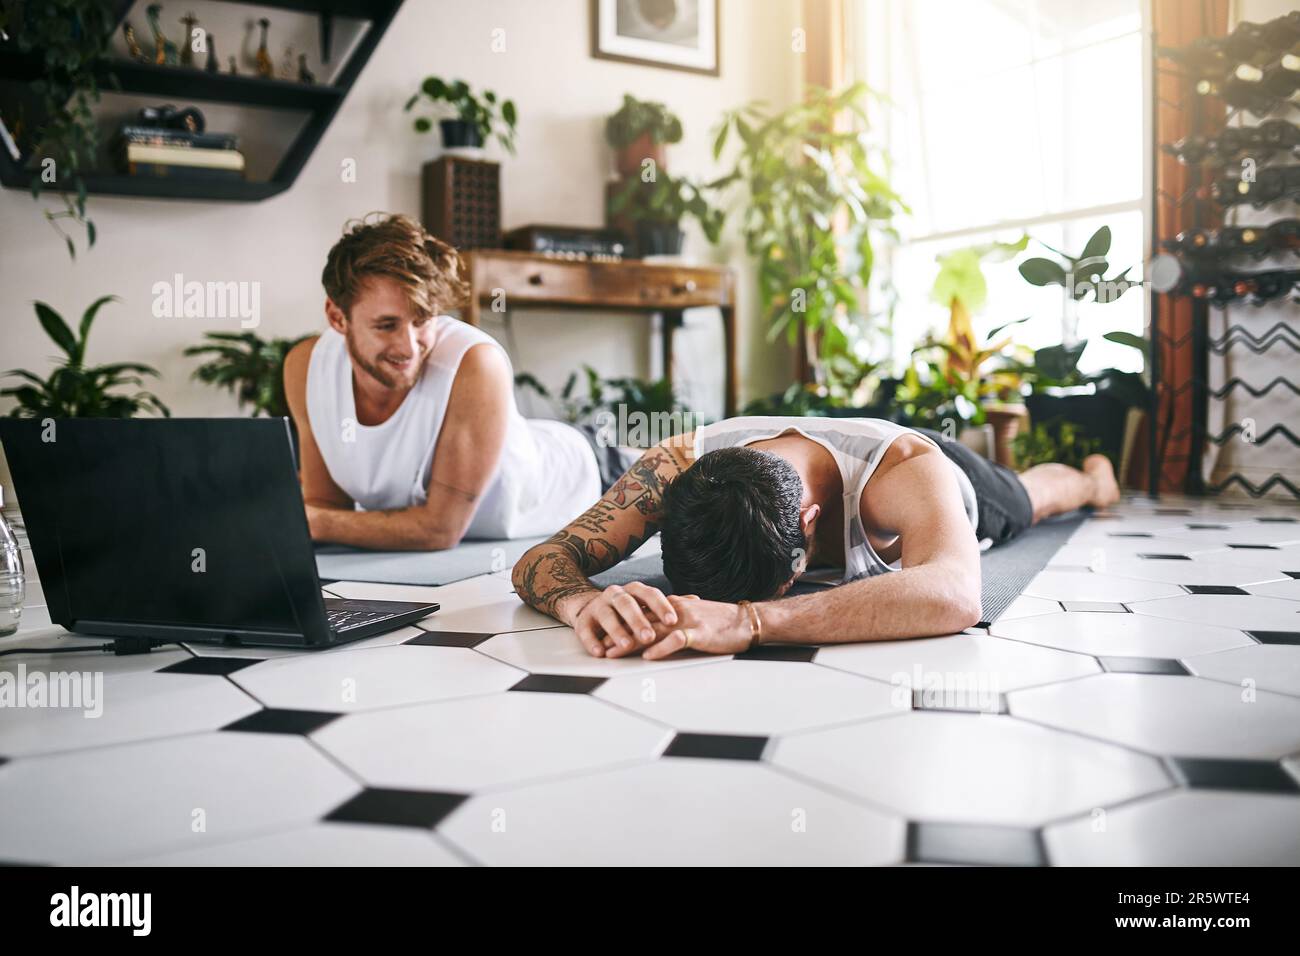 Il n'y a aucune honte dans un jeu de yoga faible. deux hommes prenant une pause après avoir passé par une routine de yoga en ligne à la maison. Banque D'Images